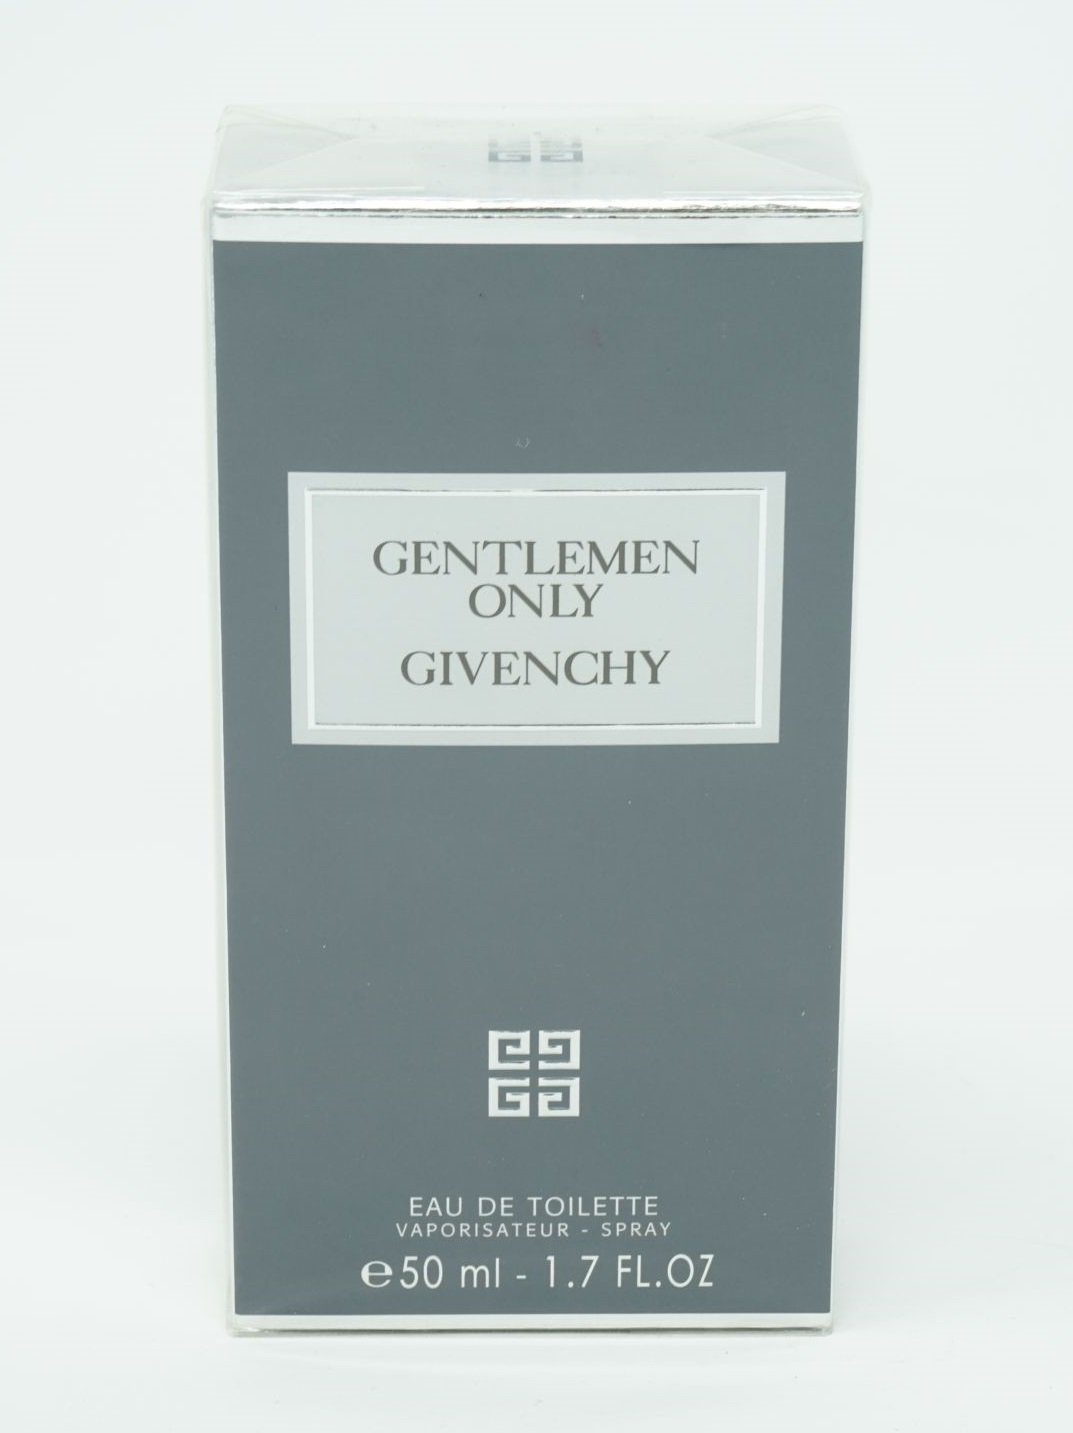 Givenchy Toilette de Spray Eau 50ml Toilette Eau de Only Gentlemen GIVENCHY